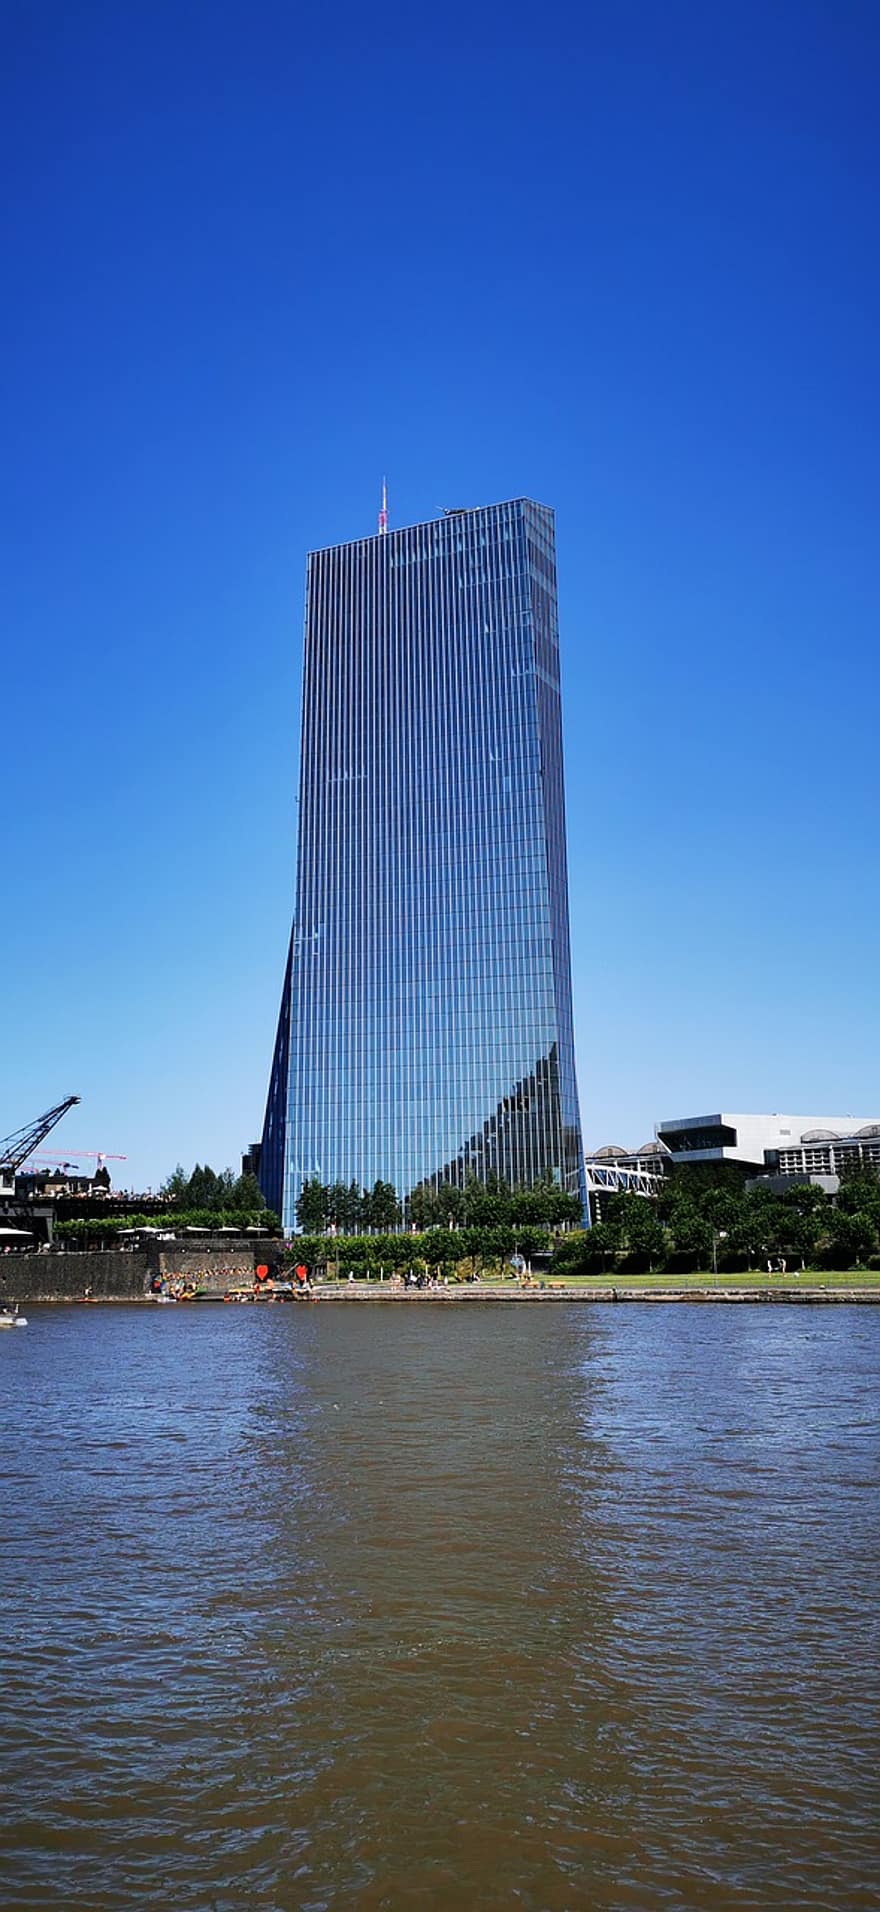 європейський центральний банк, будівлі, річка, Франкфурт, Німеччина, скляна будівля, хмарочос, архітектура, місто